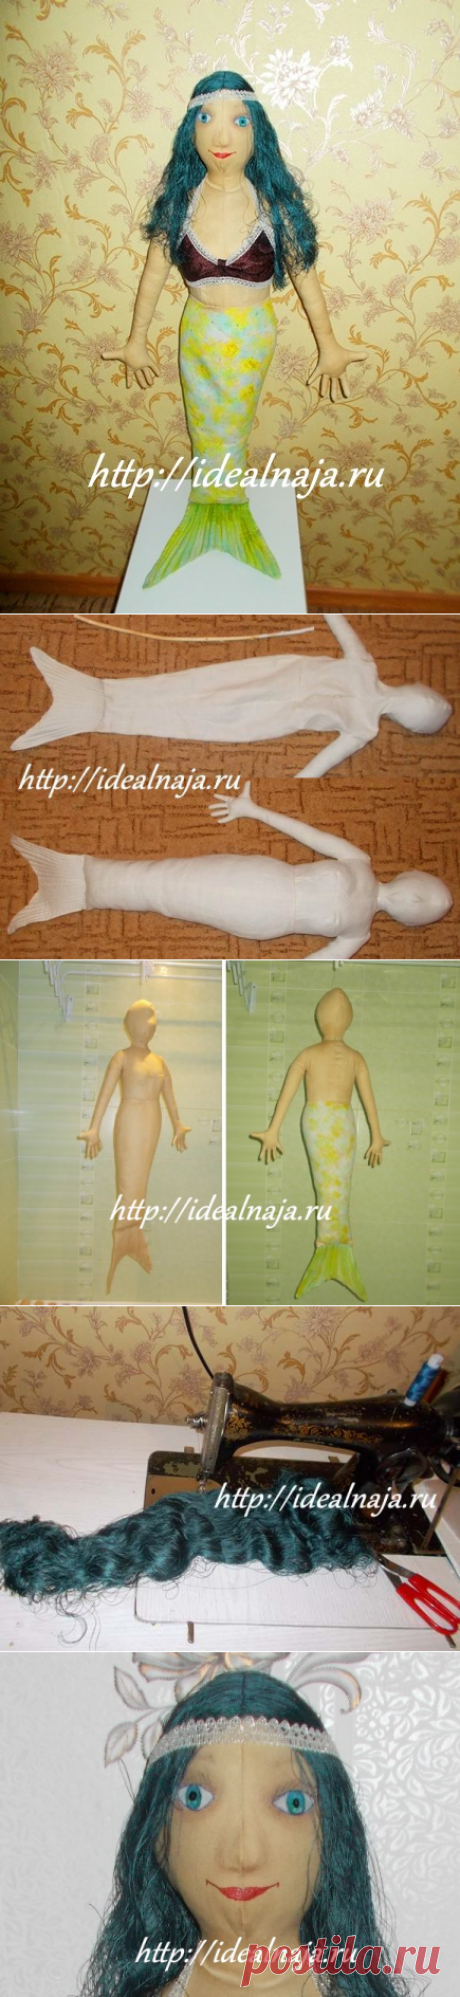 Текстильная кукла-русалка своими руками | Женский сайт &quot;Идеальная&quot; Выкройка и пошаговые инструкции от Ольги Межаковой.